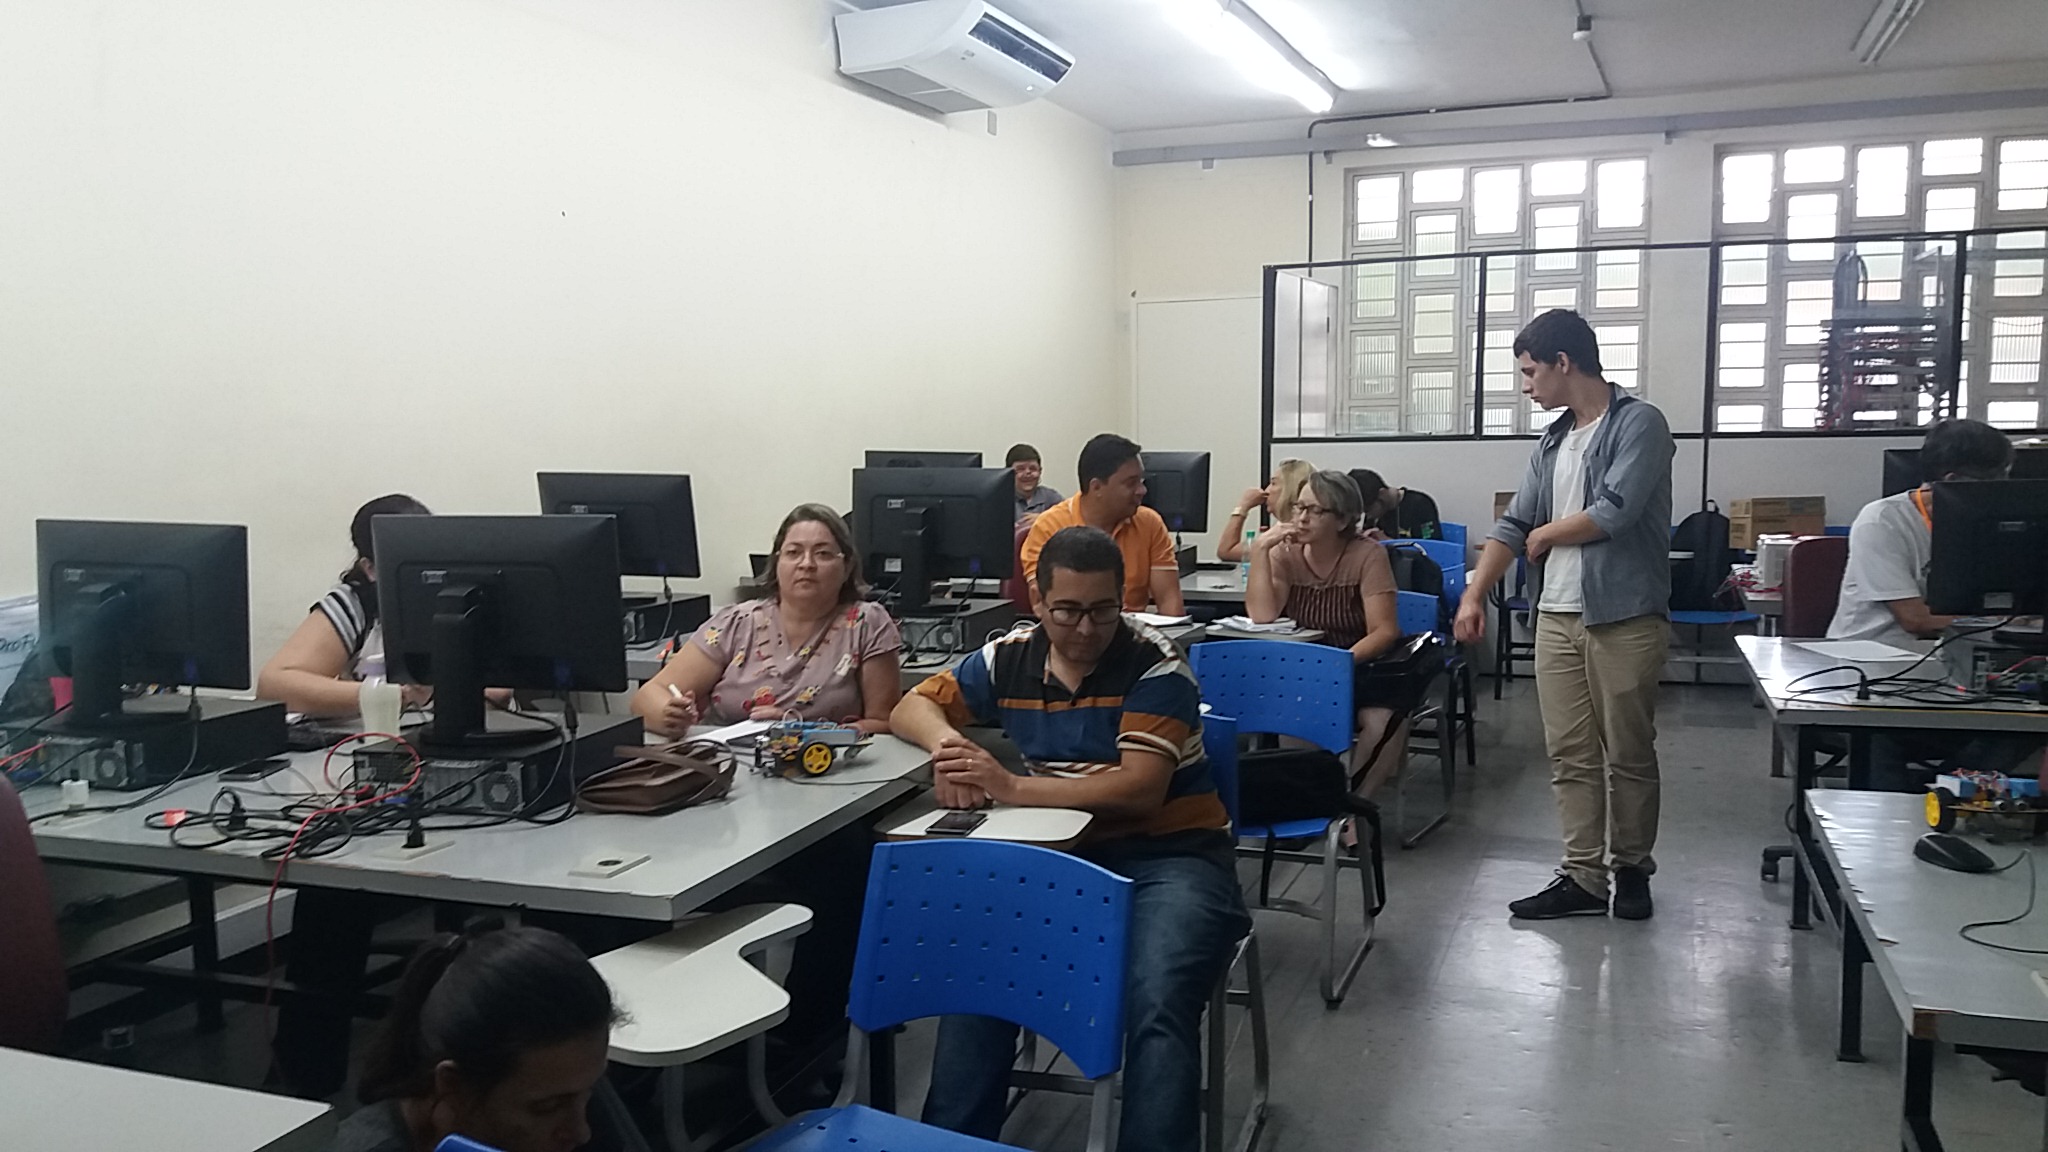 Oficinas do projeto Makers -Robótica Educacional no Câmpus Goiânia.